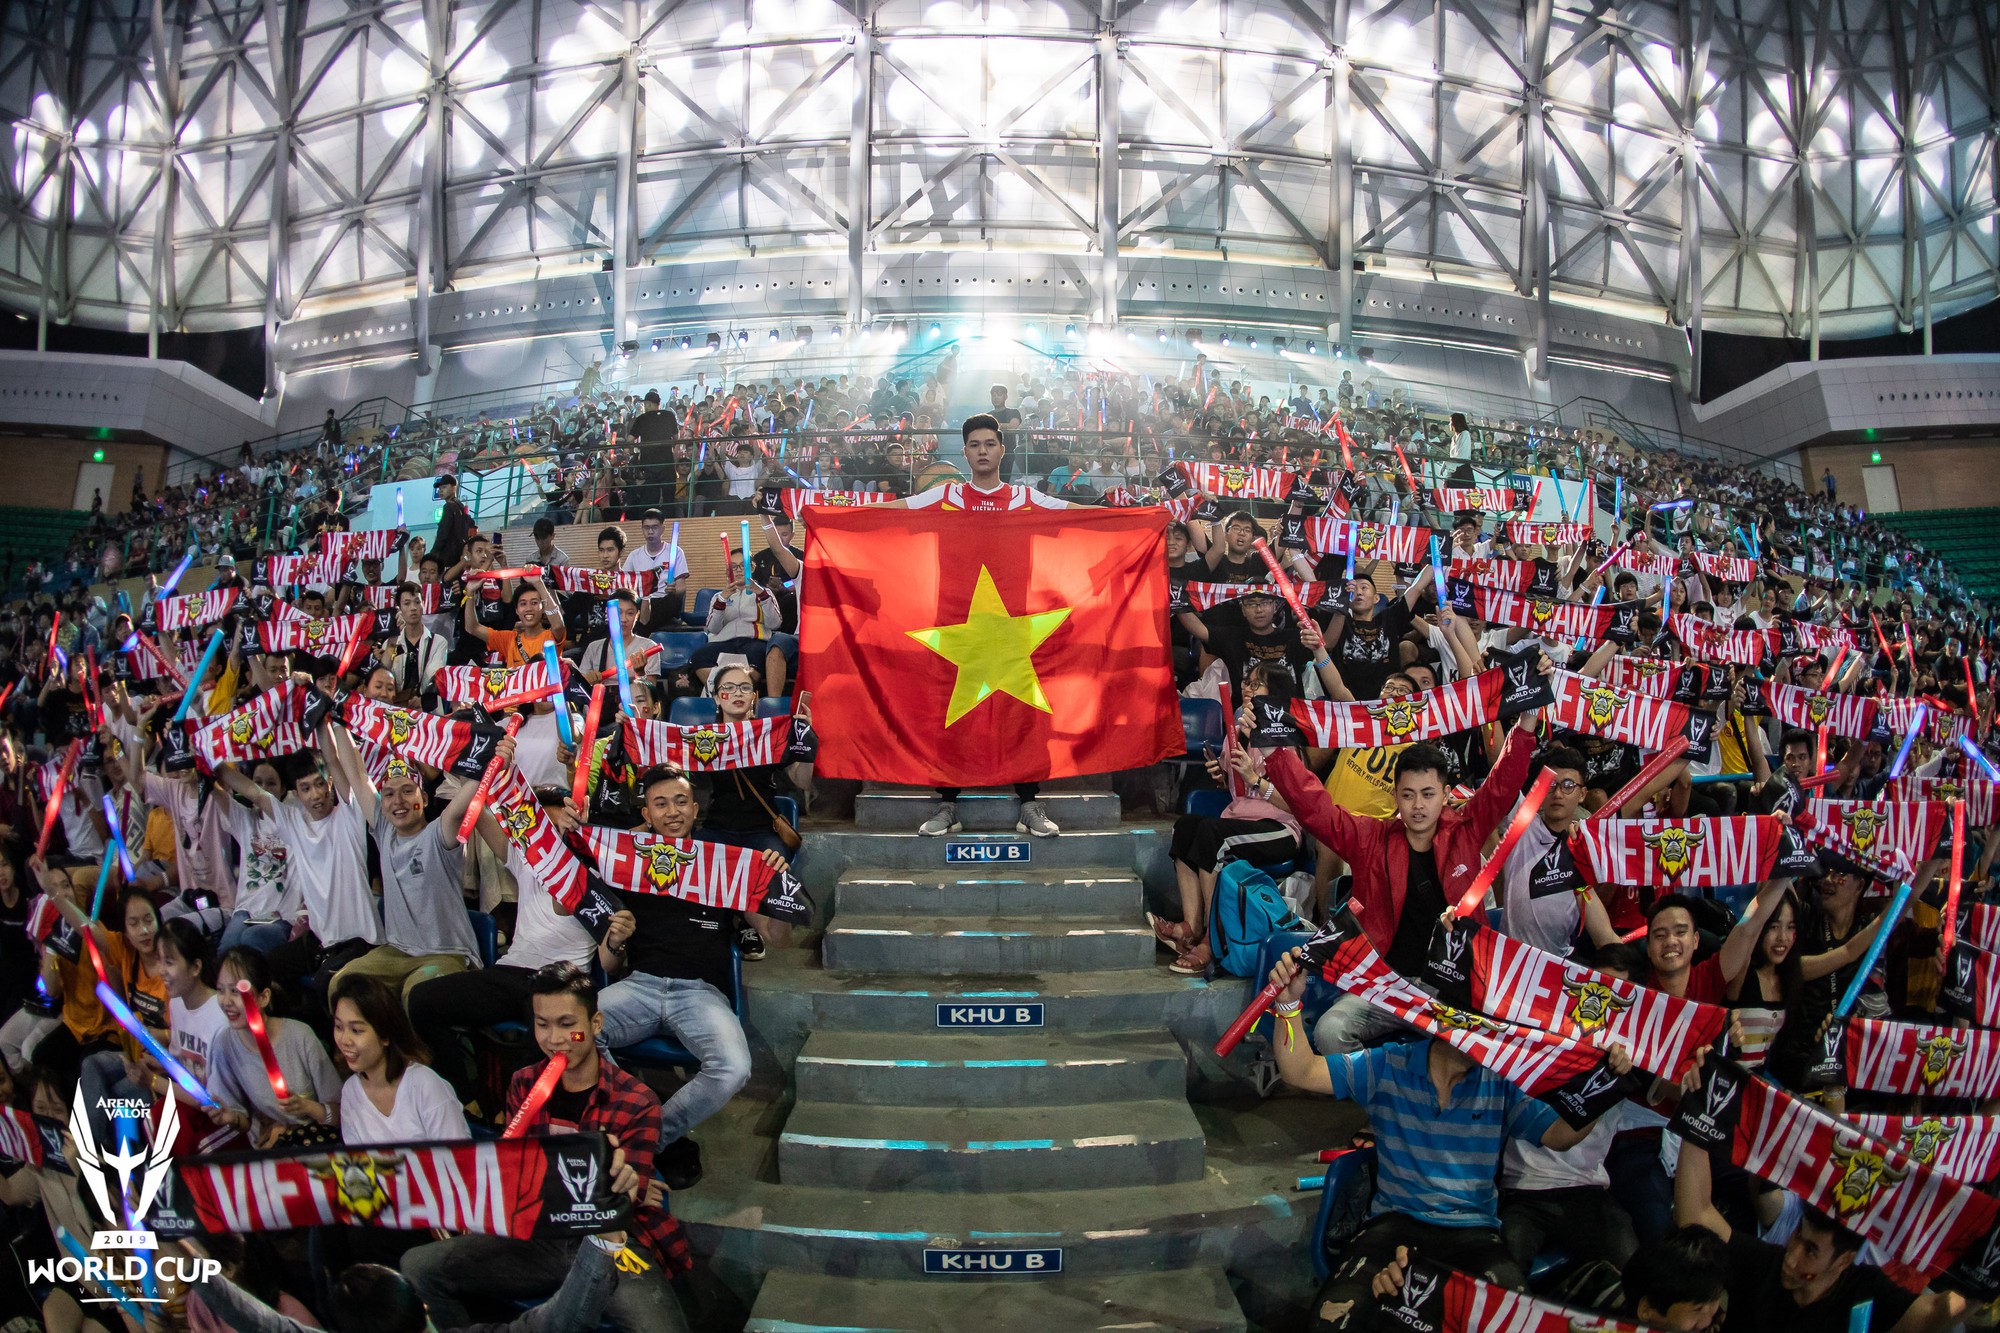 Việt Nam vô địch AWC 2019